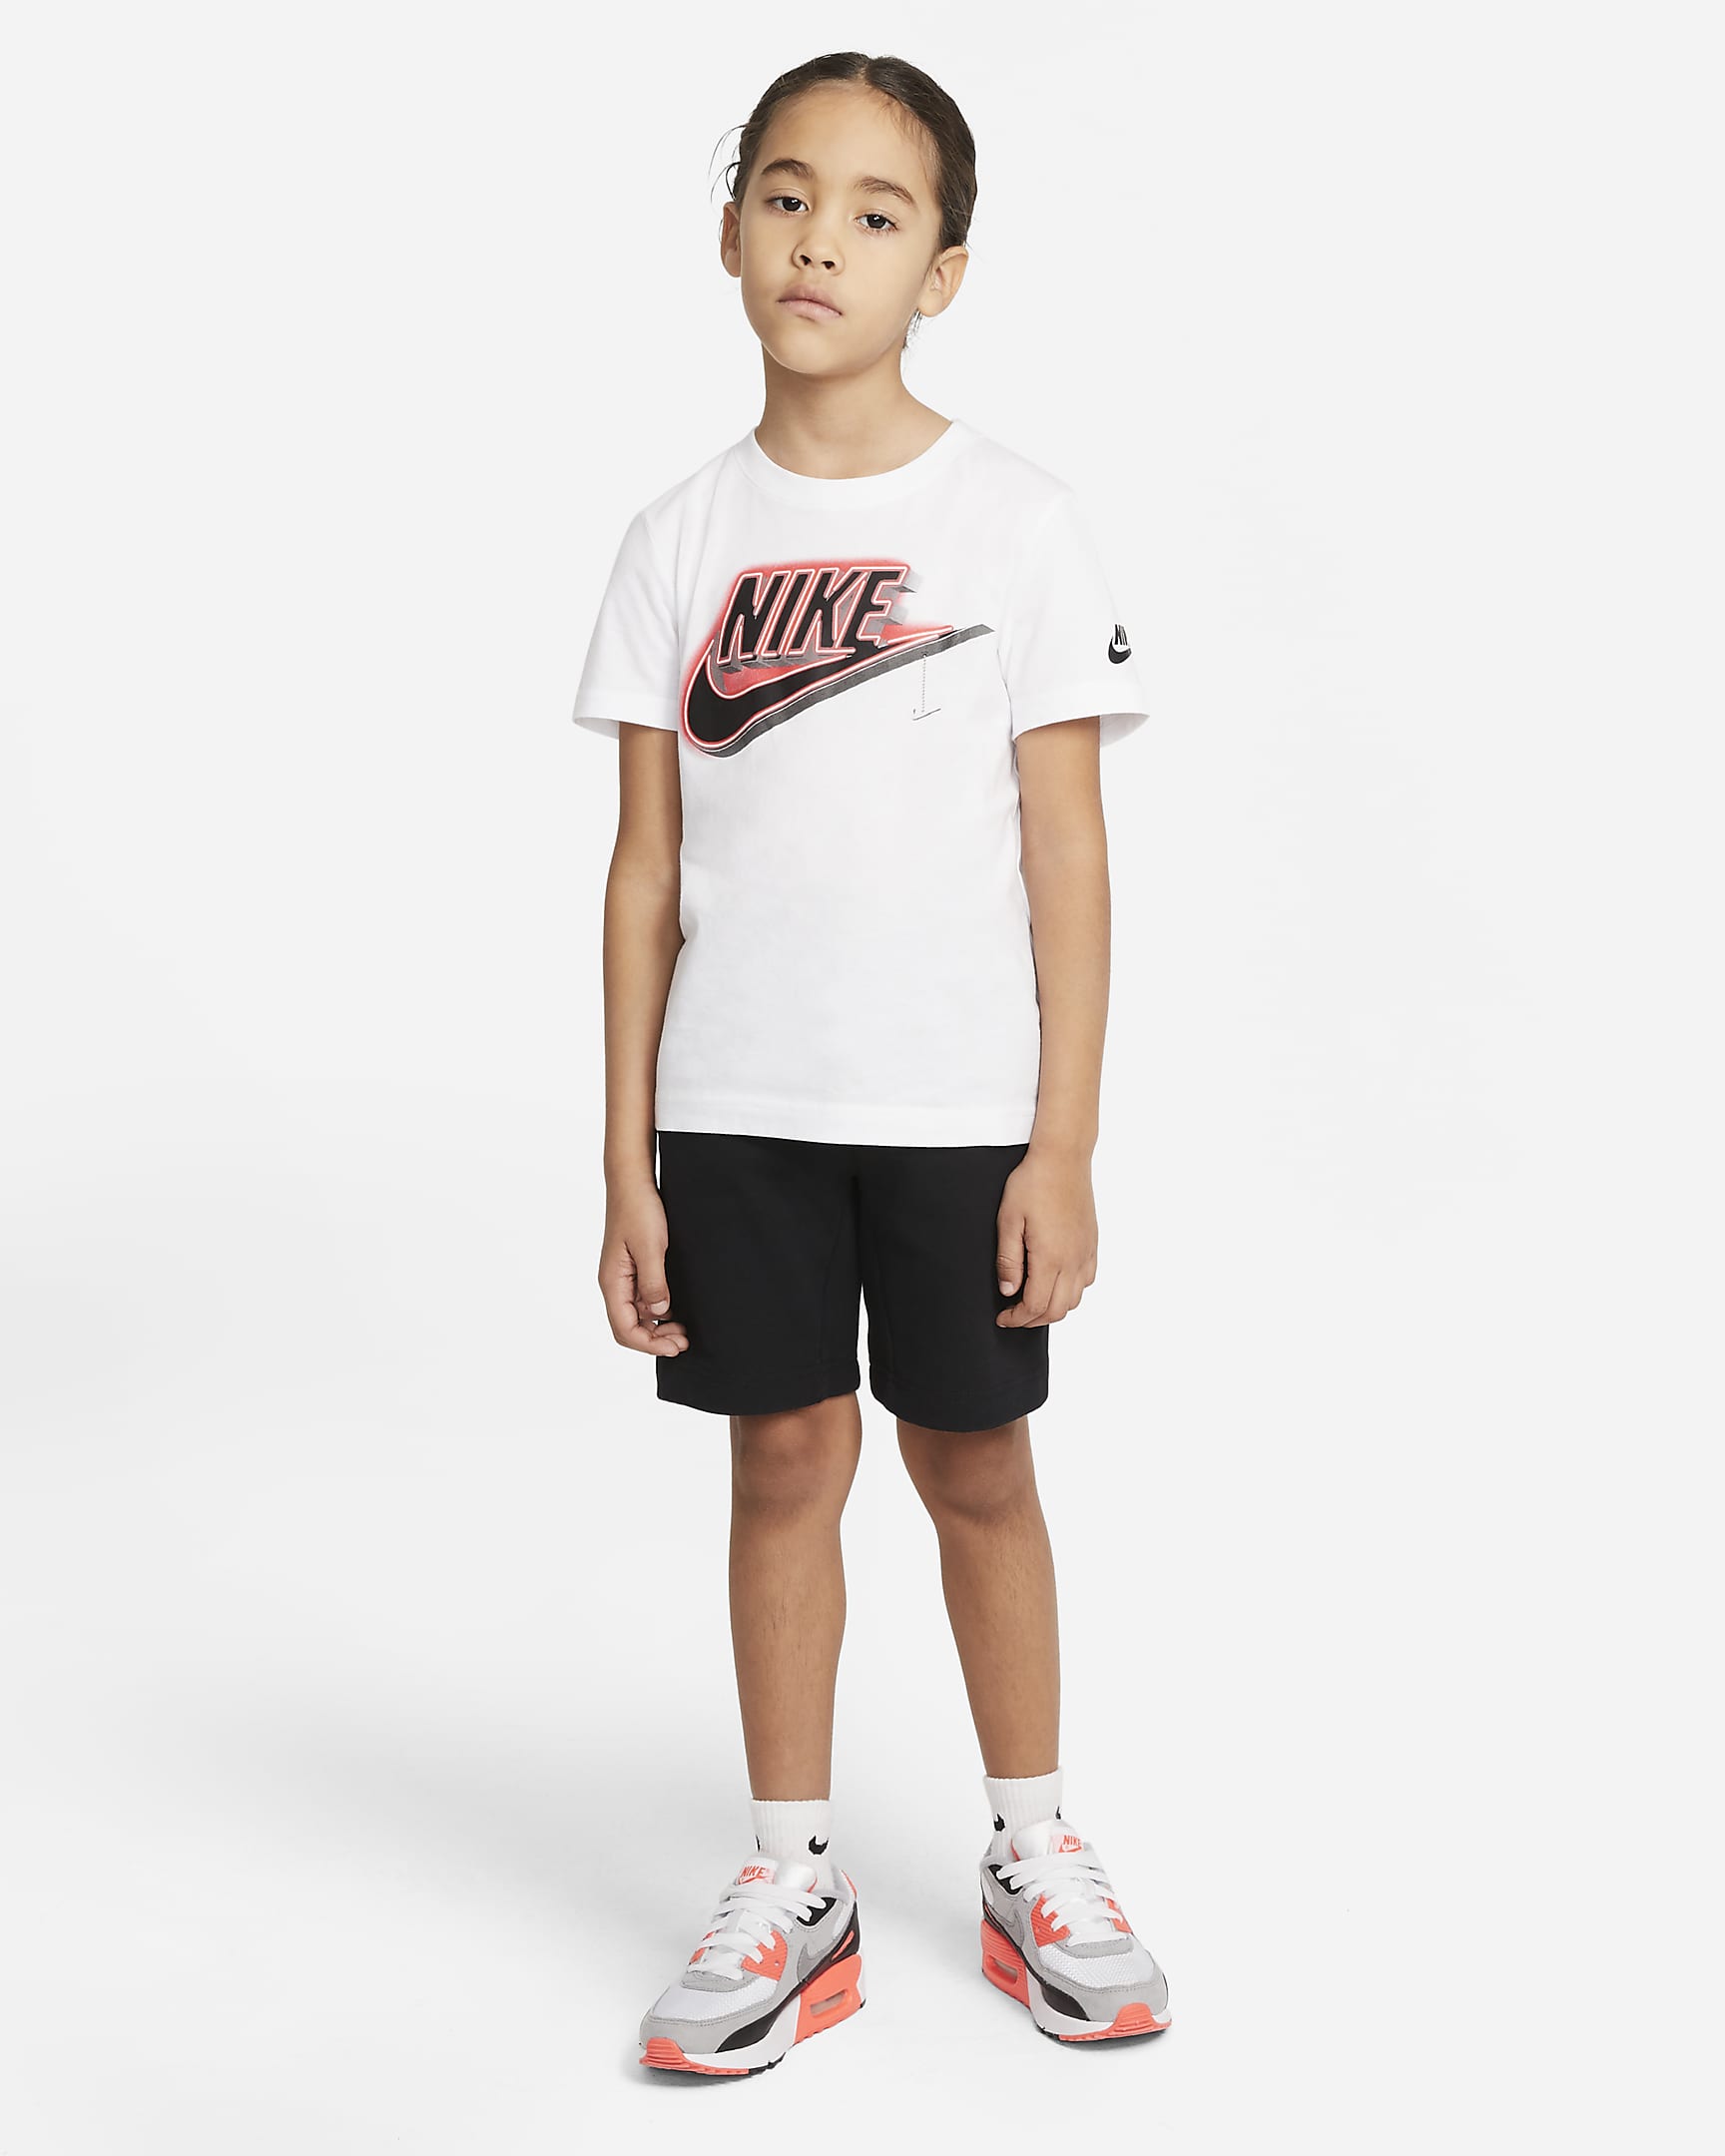 Nike Sportswear Tech Fleece Little Kids' Shorts. Nike.com